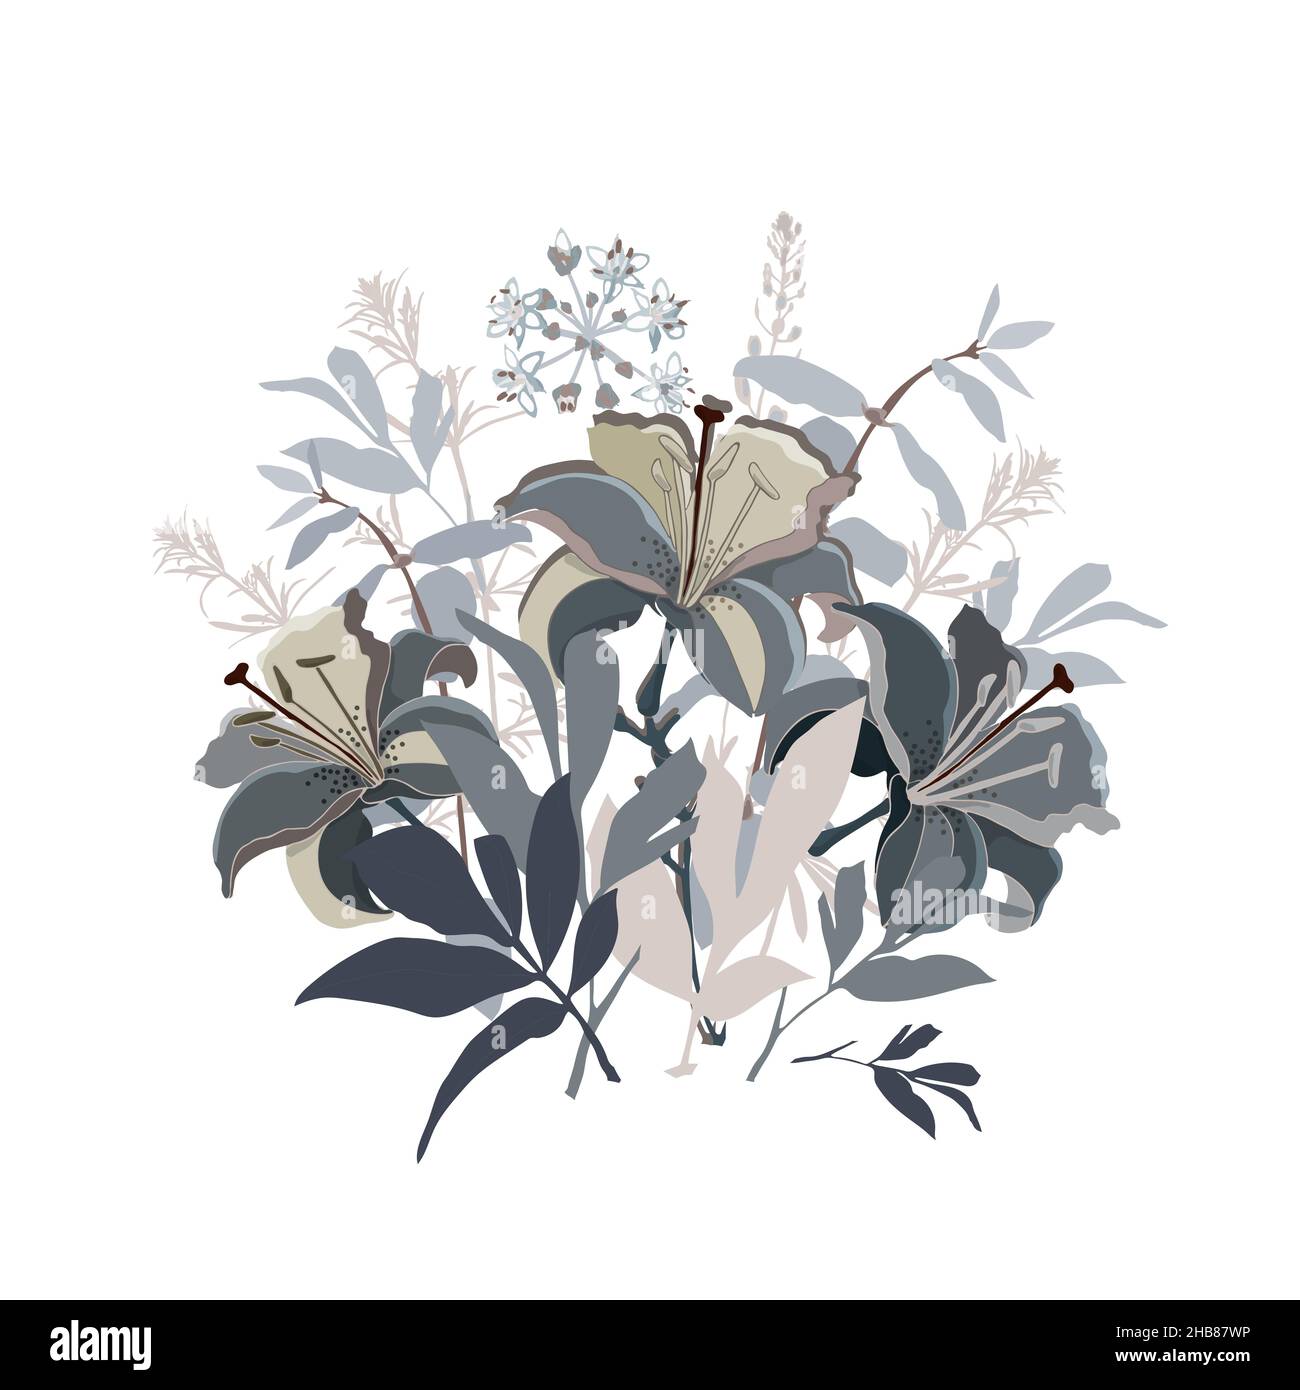 Illustration florale vectorielle.Bouquet de fleurs de nénuphars dans des tons beige et gris sur fond blanc. Illustration de Vecteur